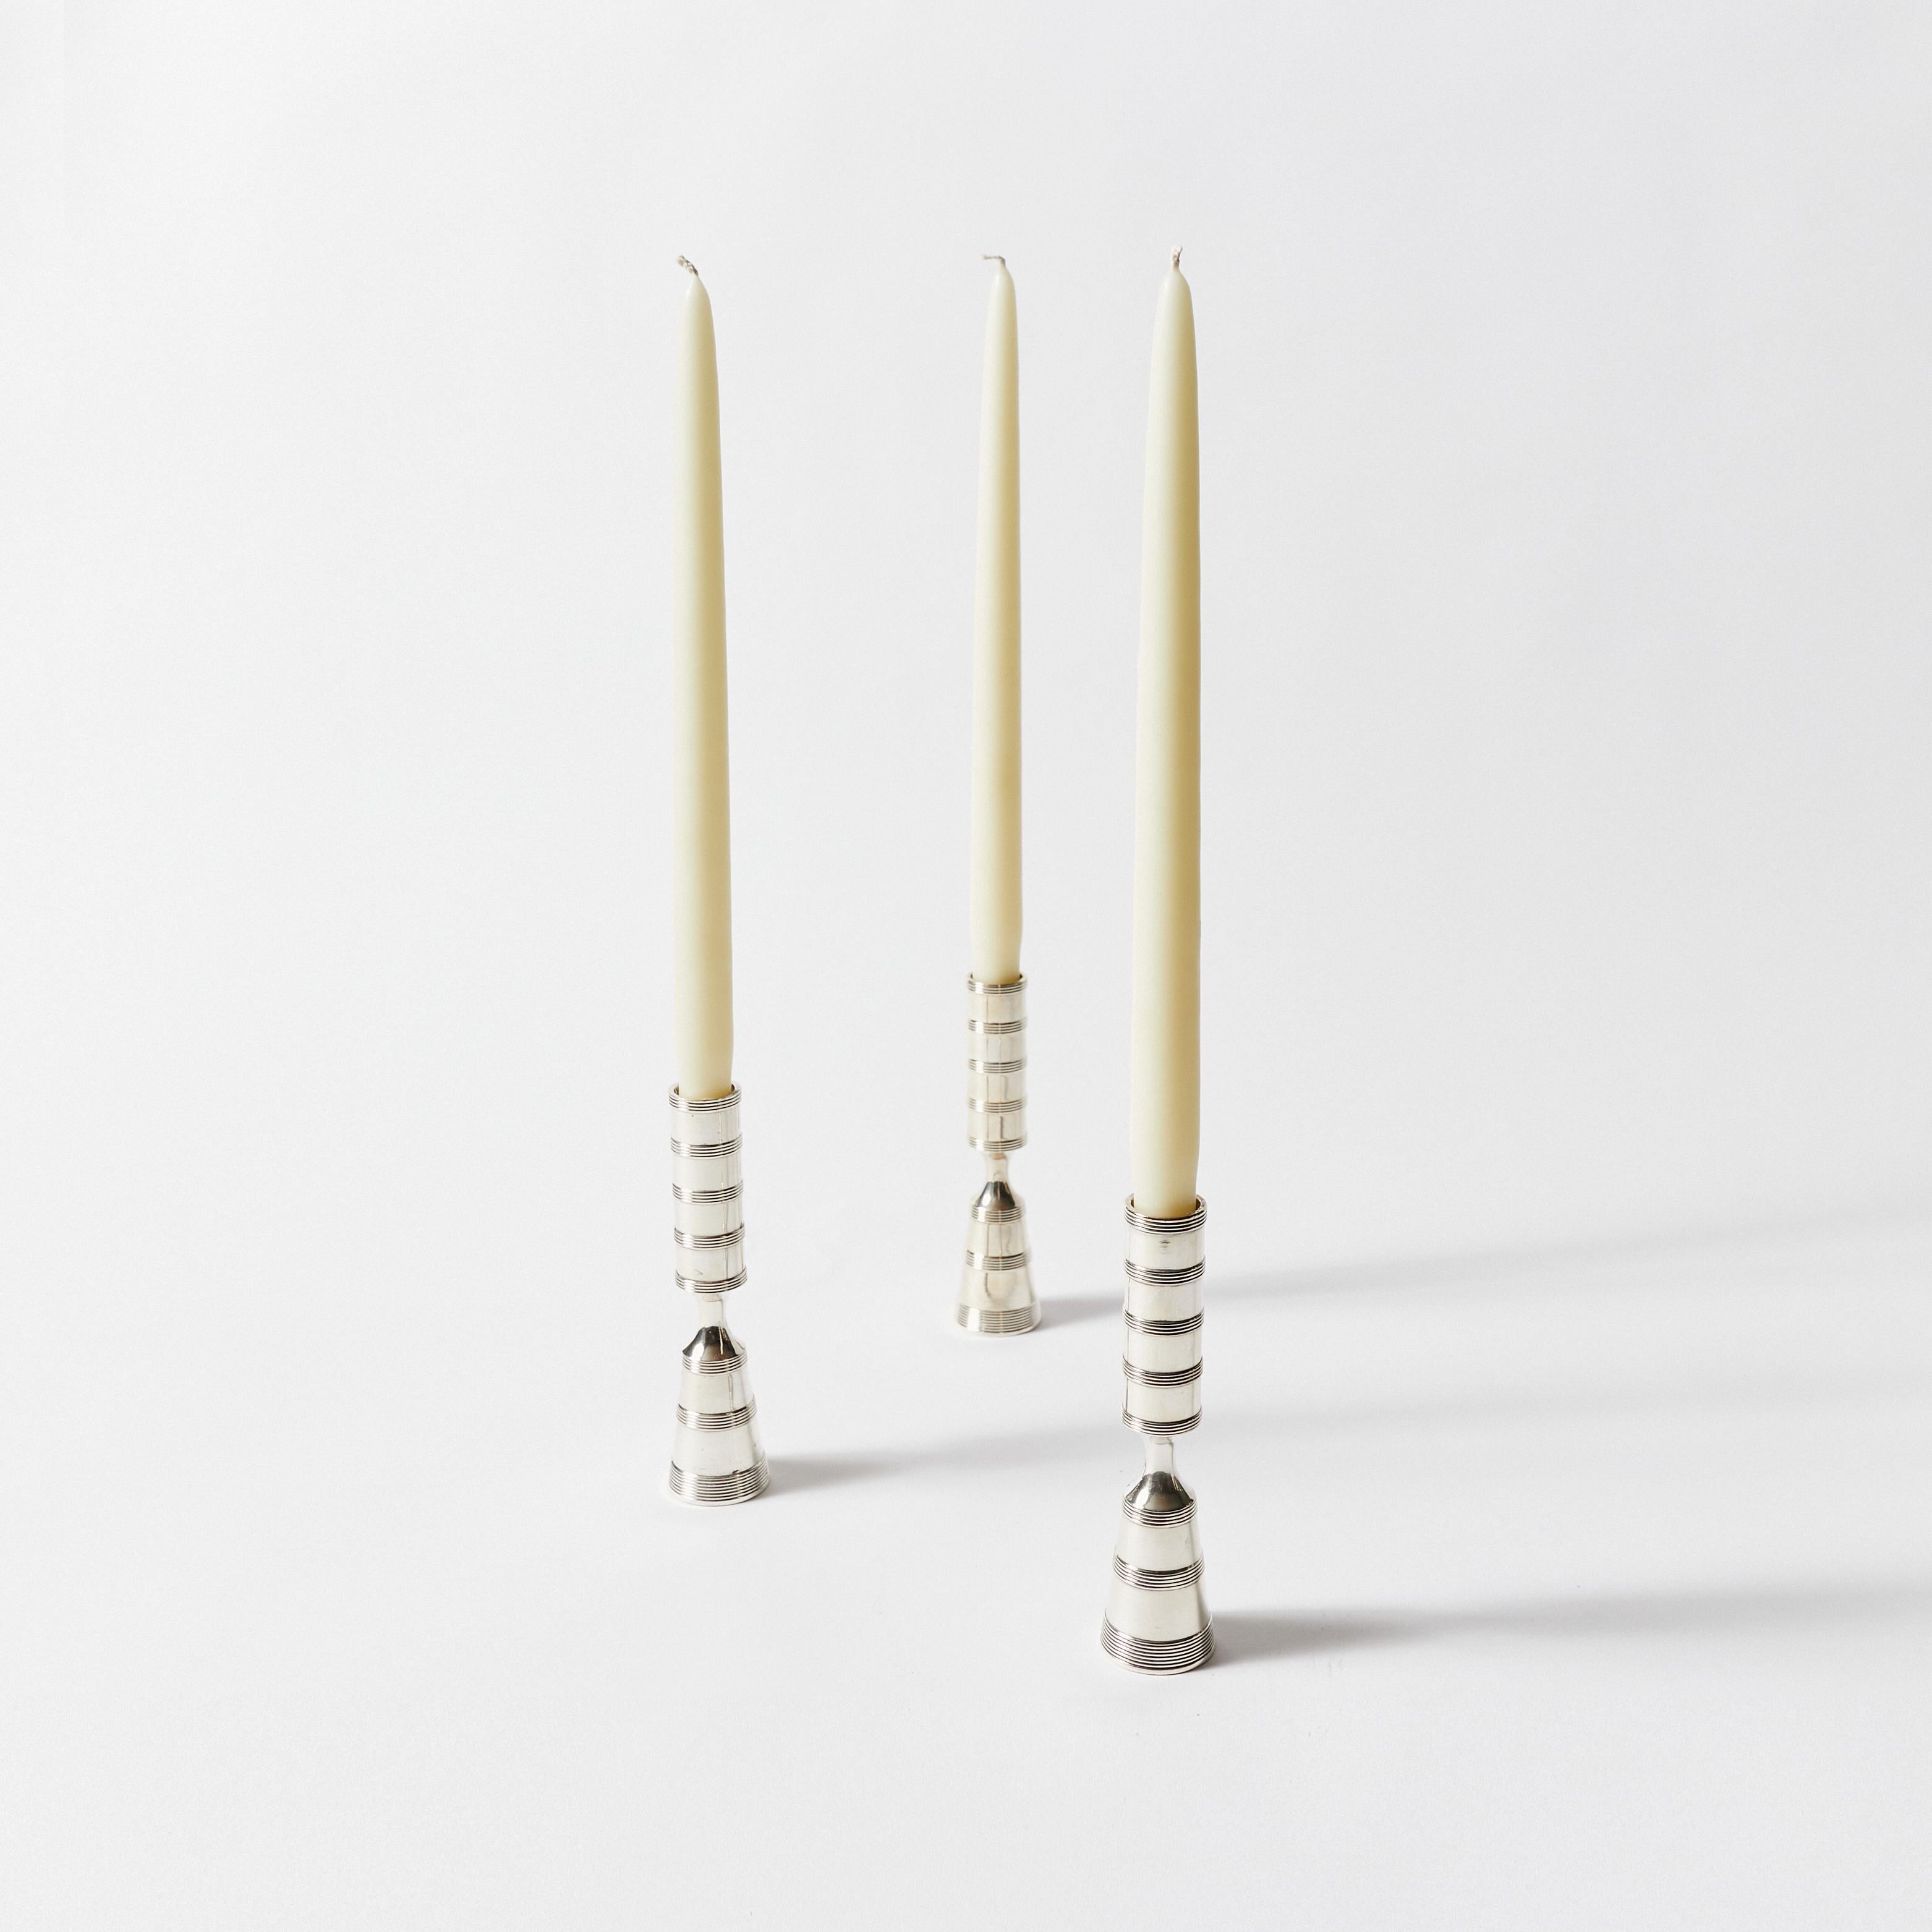 Satz von achtunddreißig versilberten Pilar-Kerzenleuchtern. Entworfen von Jens Harald Quistgaard für Dansk Designs Copenhagen.
    